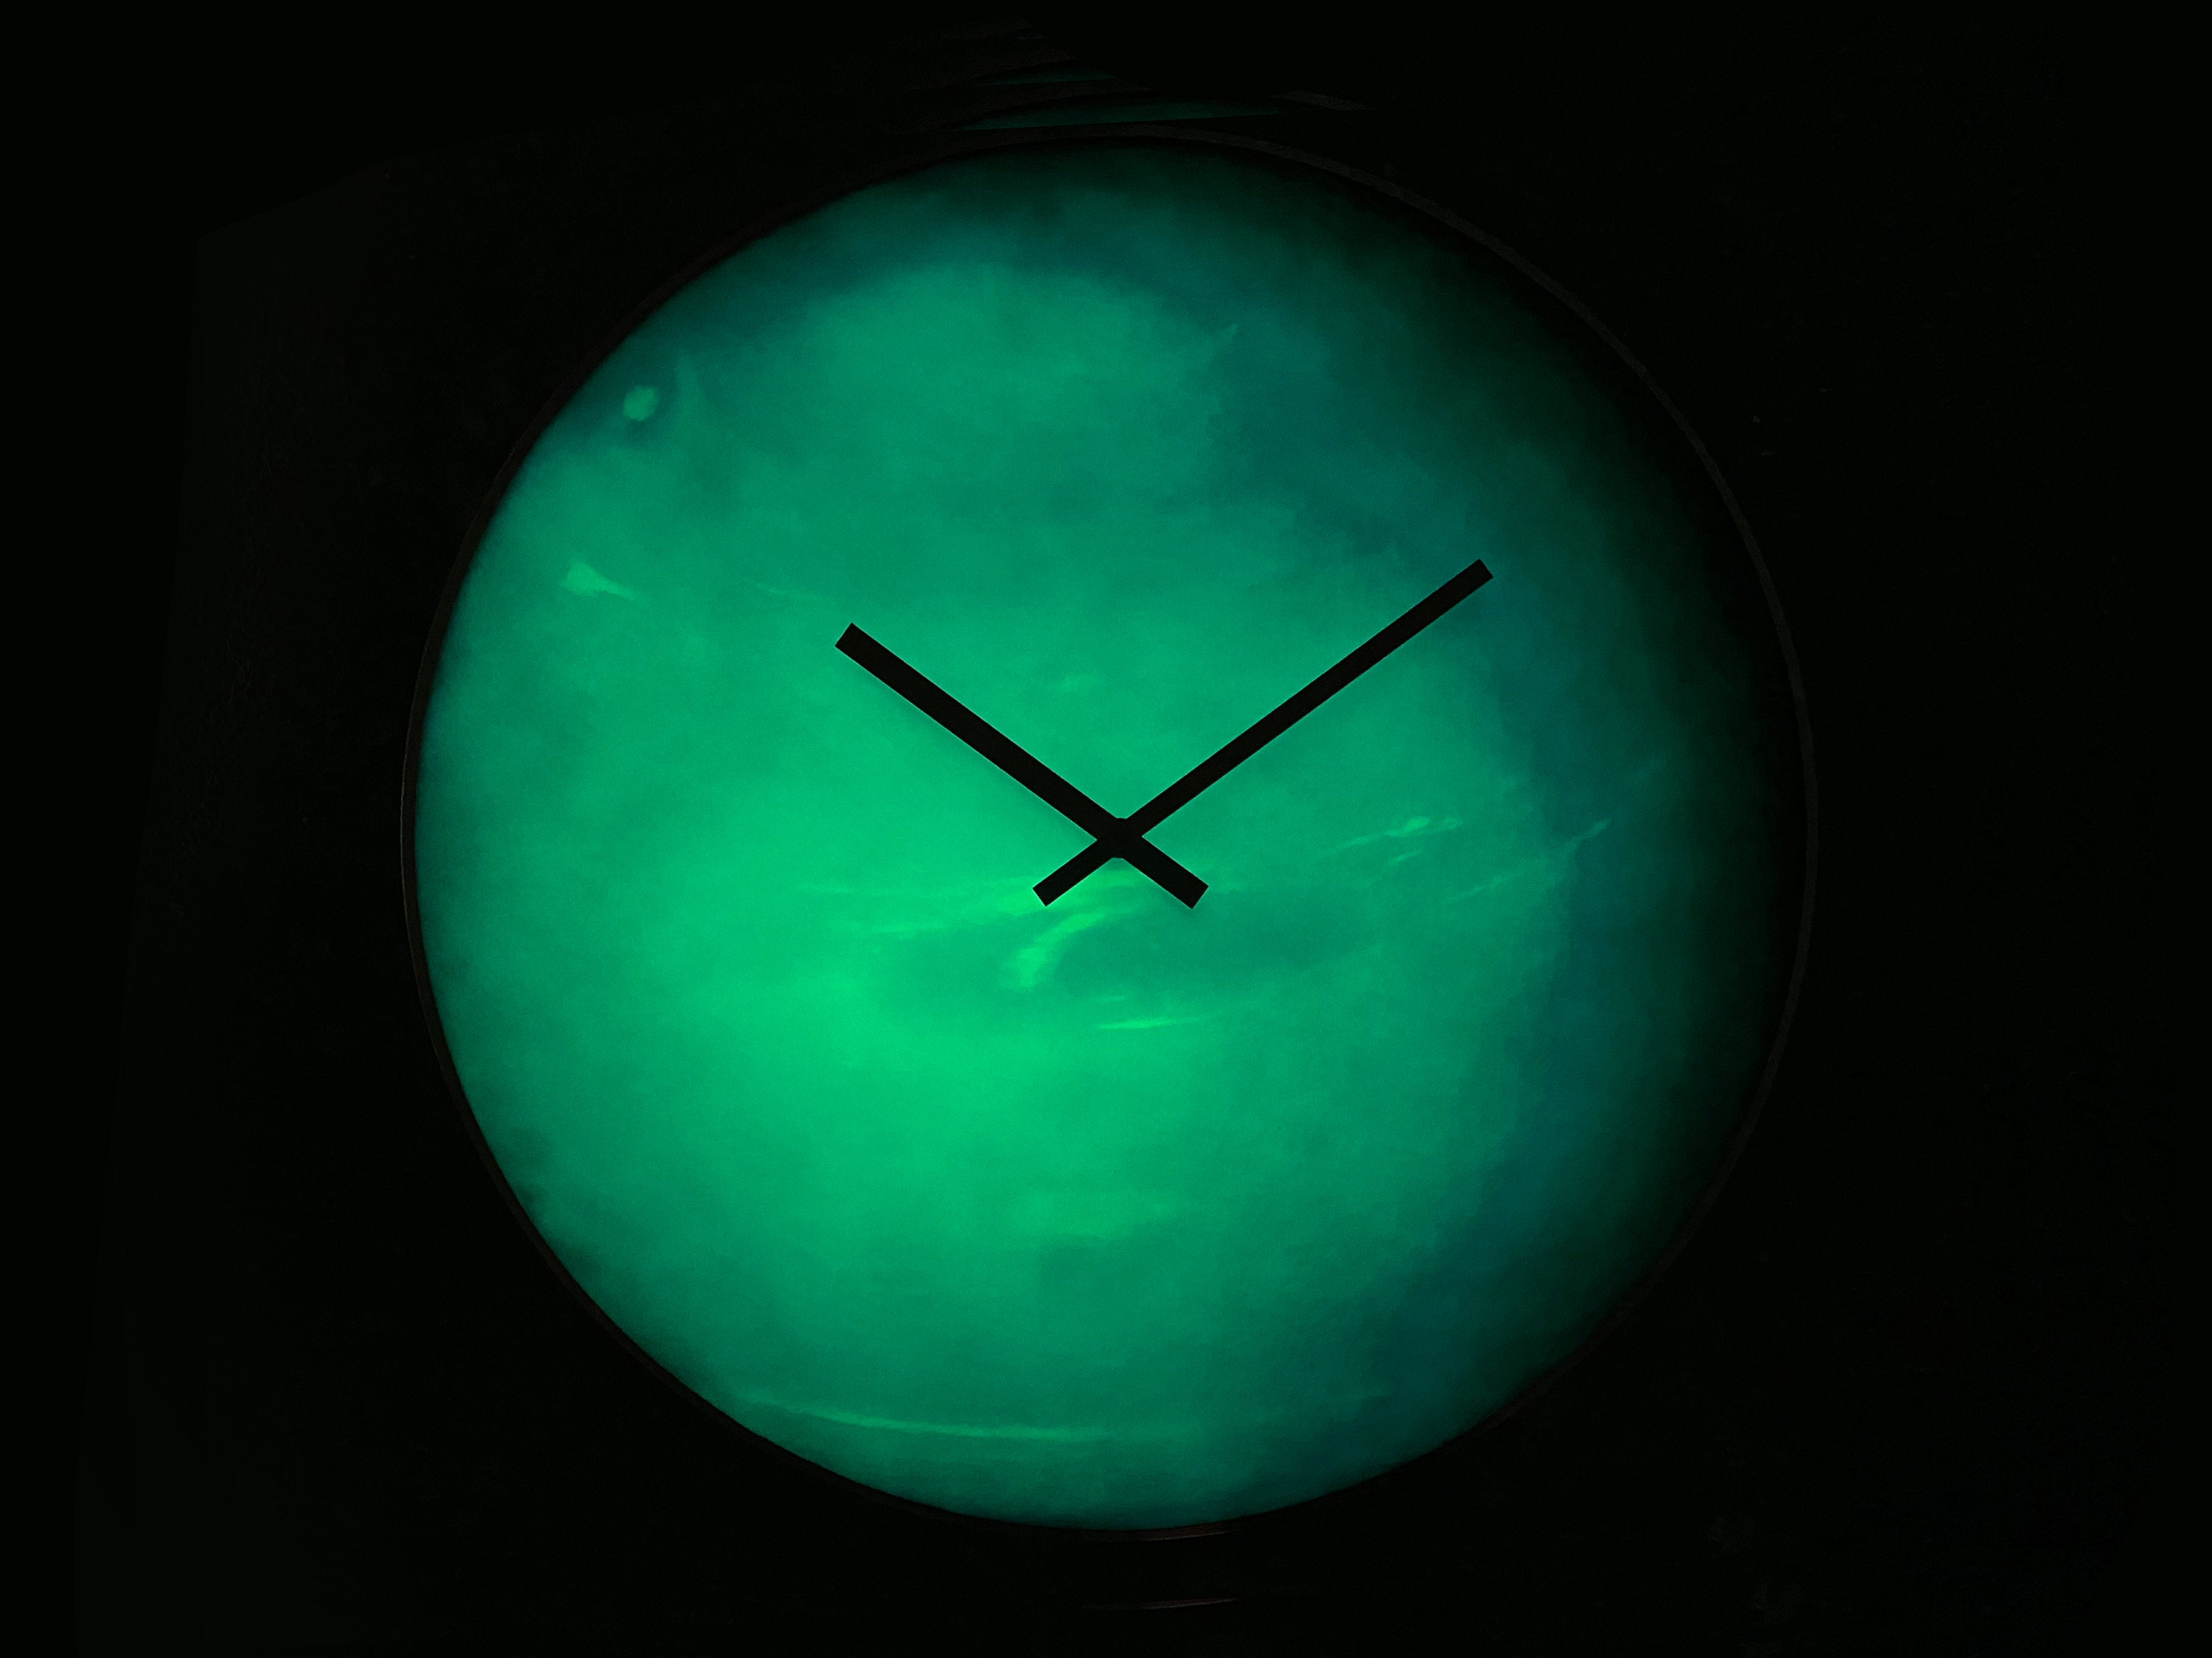 Horloge murale Neptune, horloge lumineuse Neptune, lueur dans le noir,  décor planétaire, horloge spatiale, signe Poissons, grande horloge murale,  horloge surdimensionnée -  France